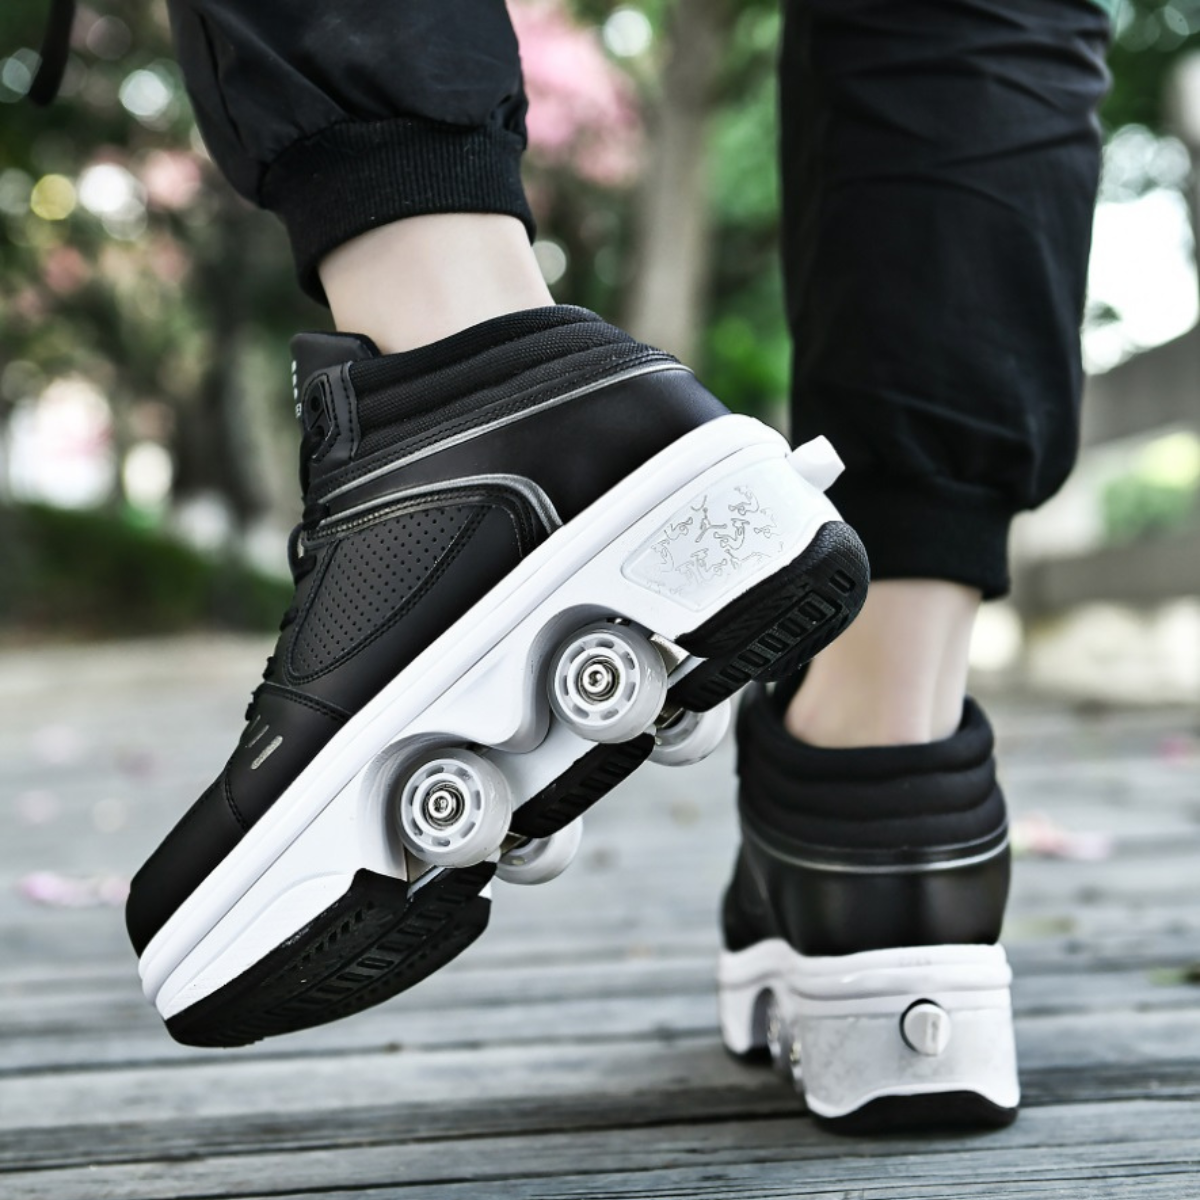 black roller skate shoes